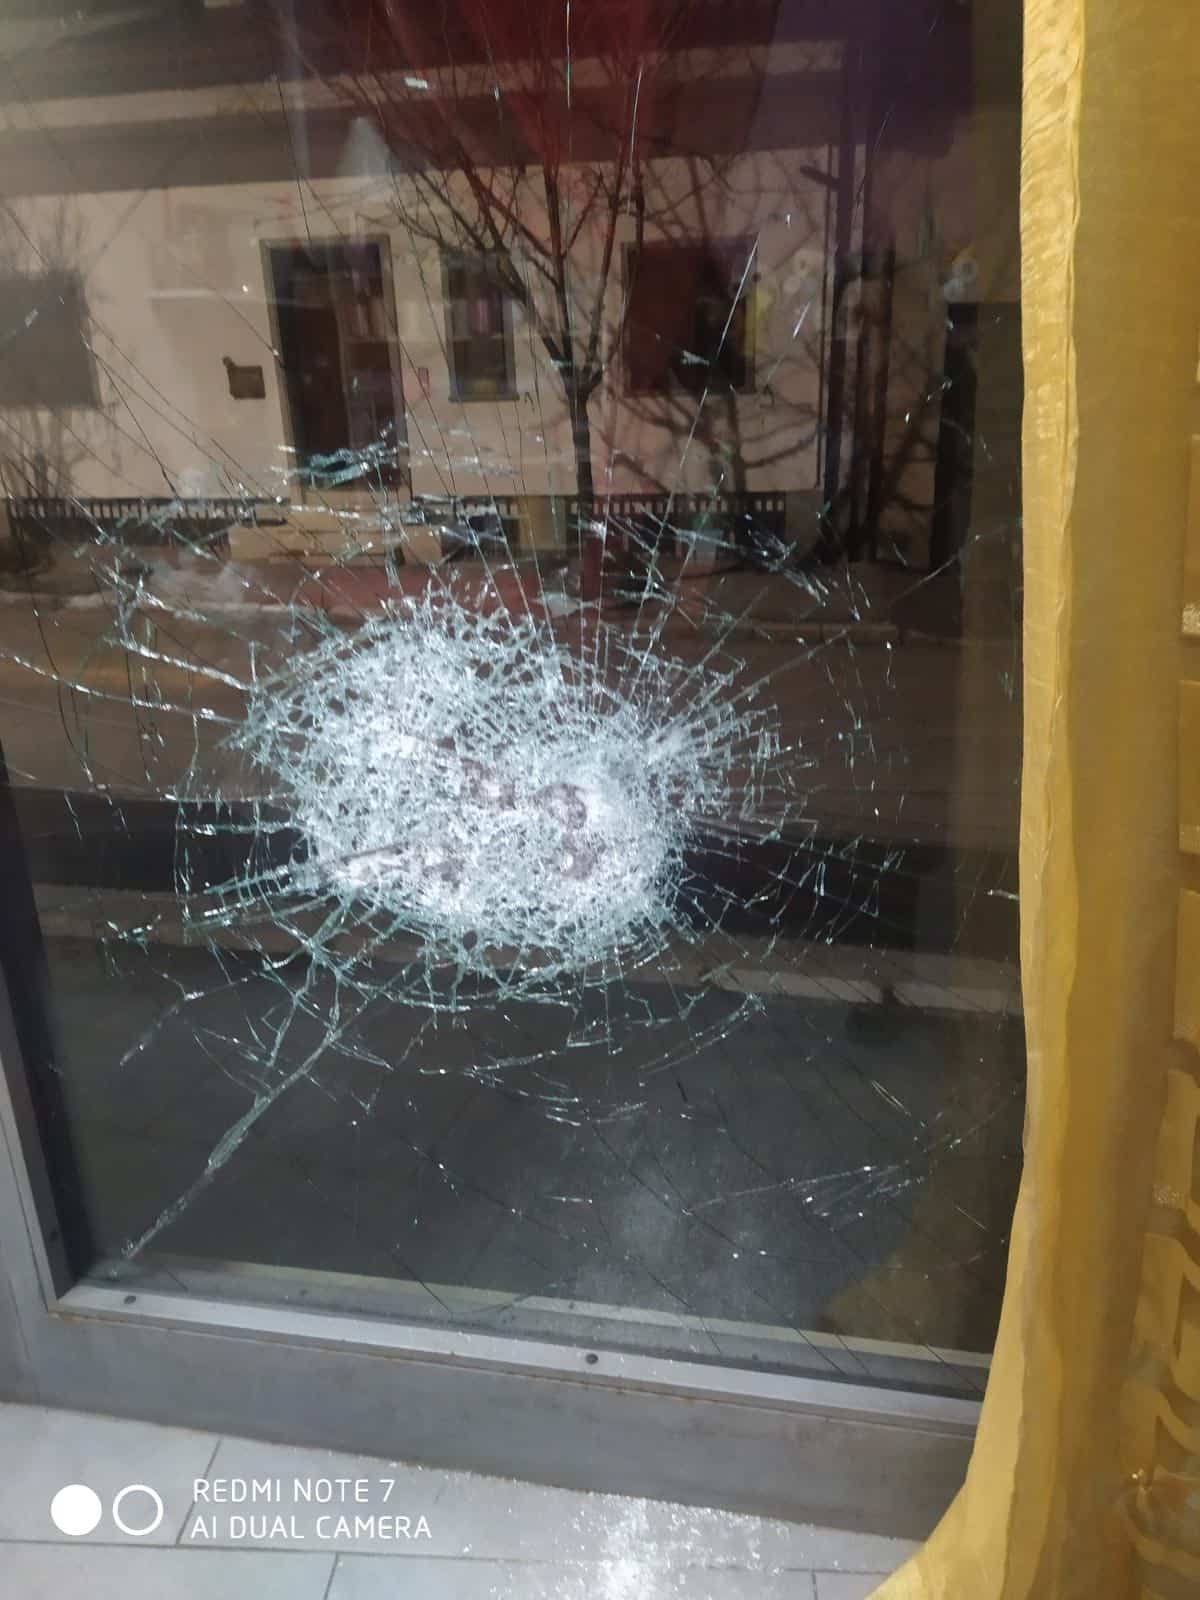 Tentativo di furto con l'ennesima vetrina spaccata ad Avezzano